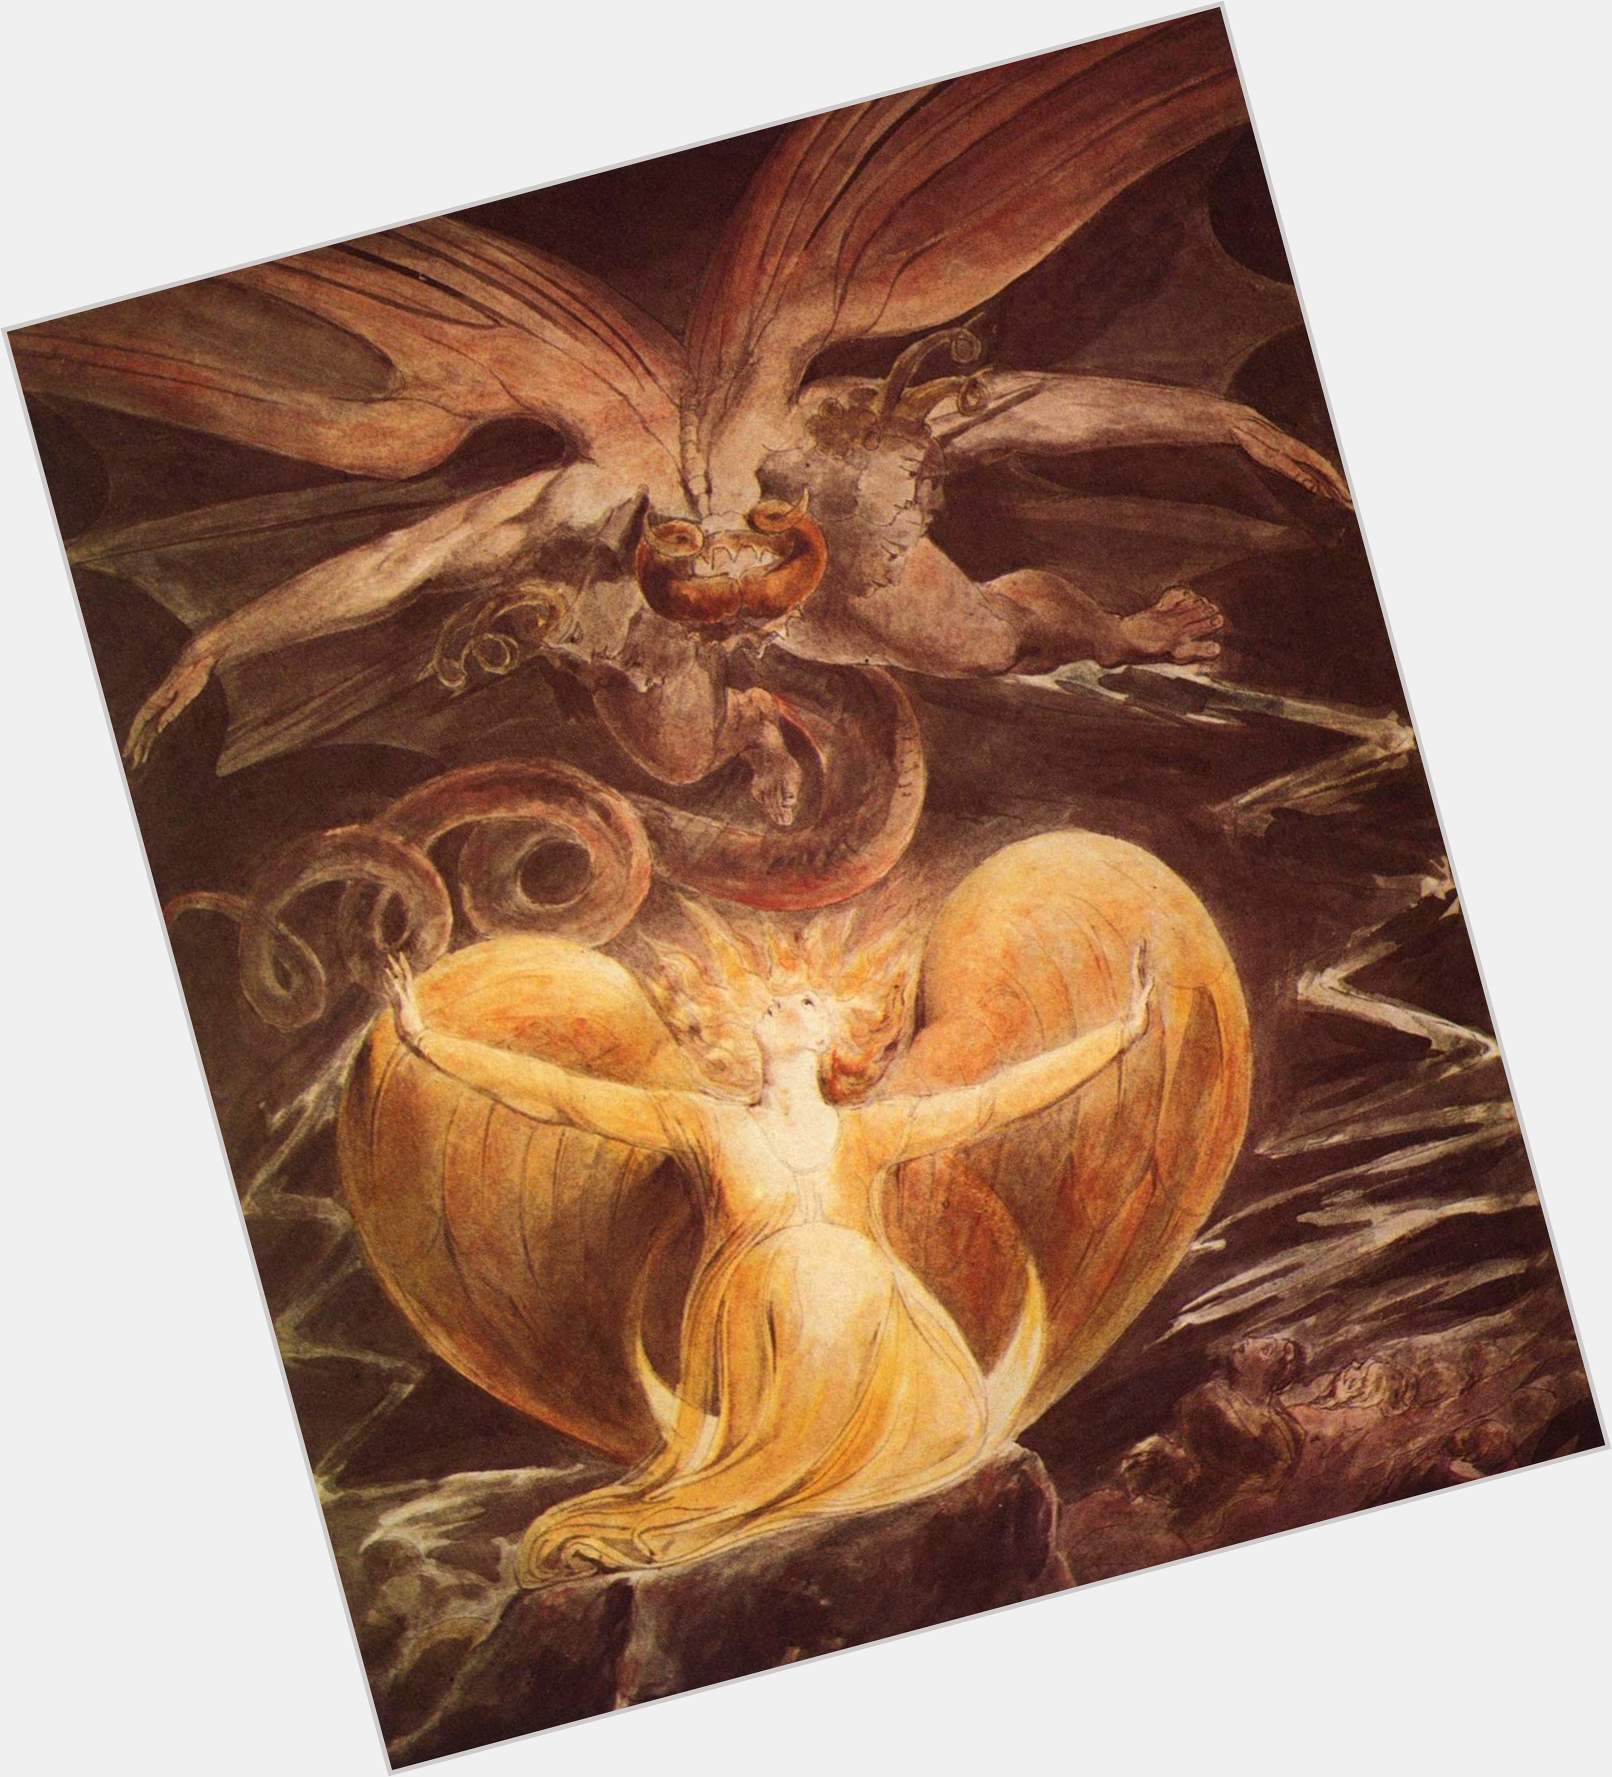 William Blake full body 4.jpg